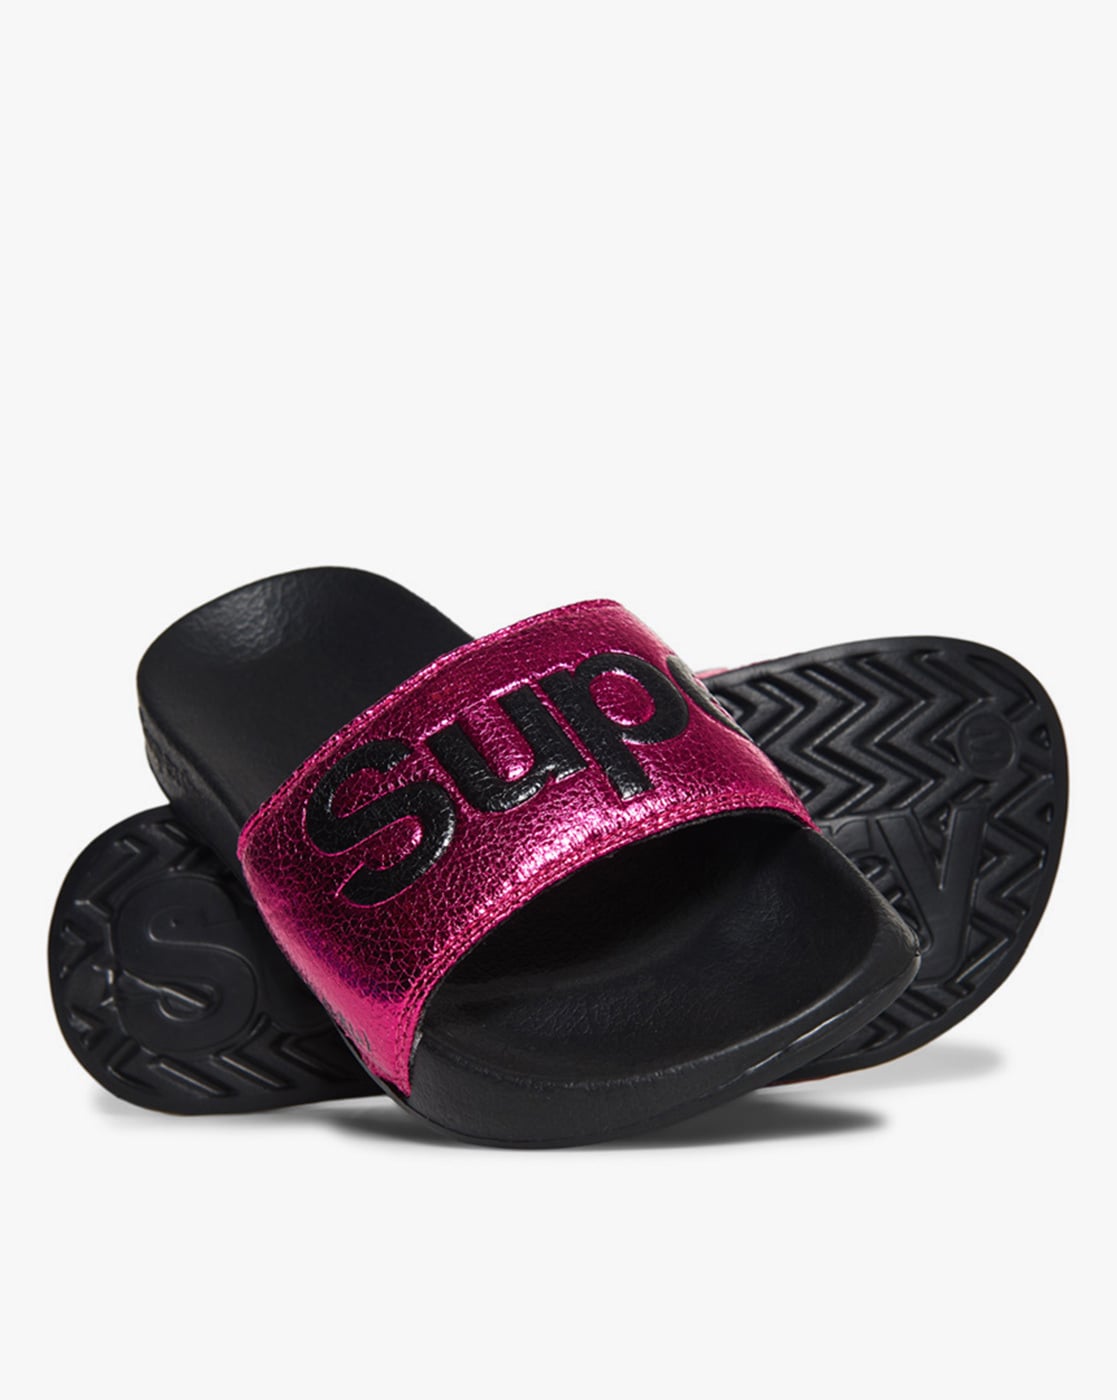 women slippers online